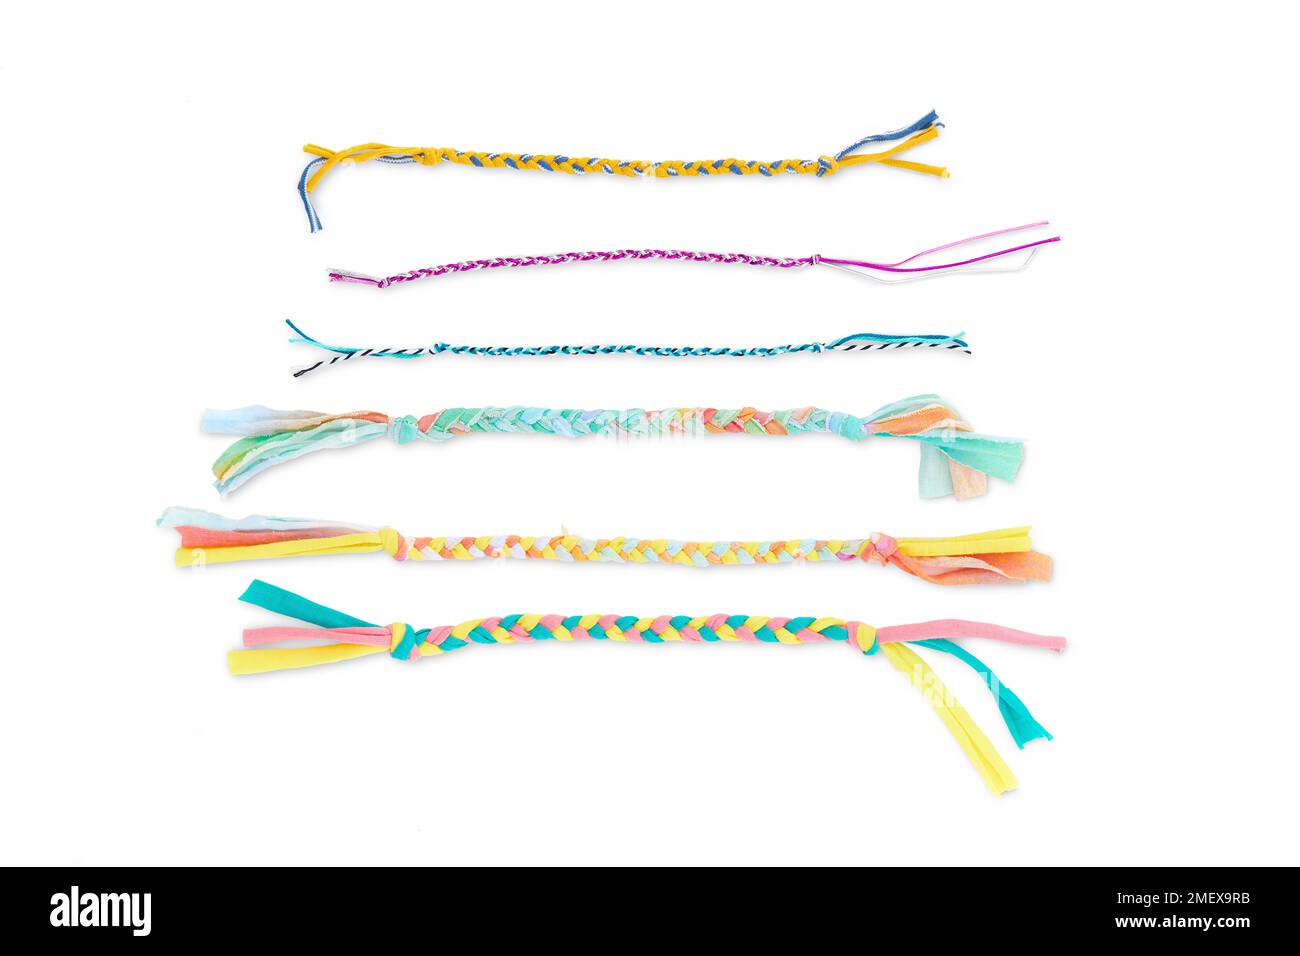 Bracelets tissés - bracelets tressés utilisant divers matériaux recyclés tels que l'élastique, la ficelle et le tissu de chemise Banque D'Images